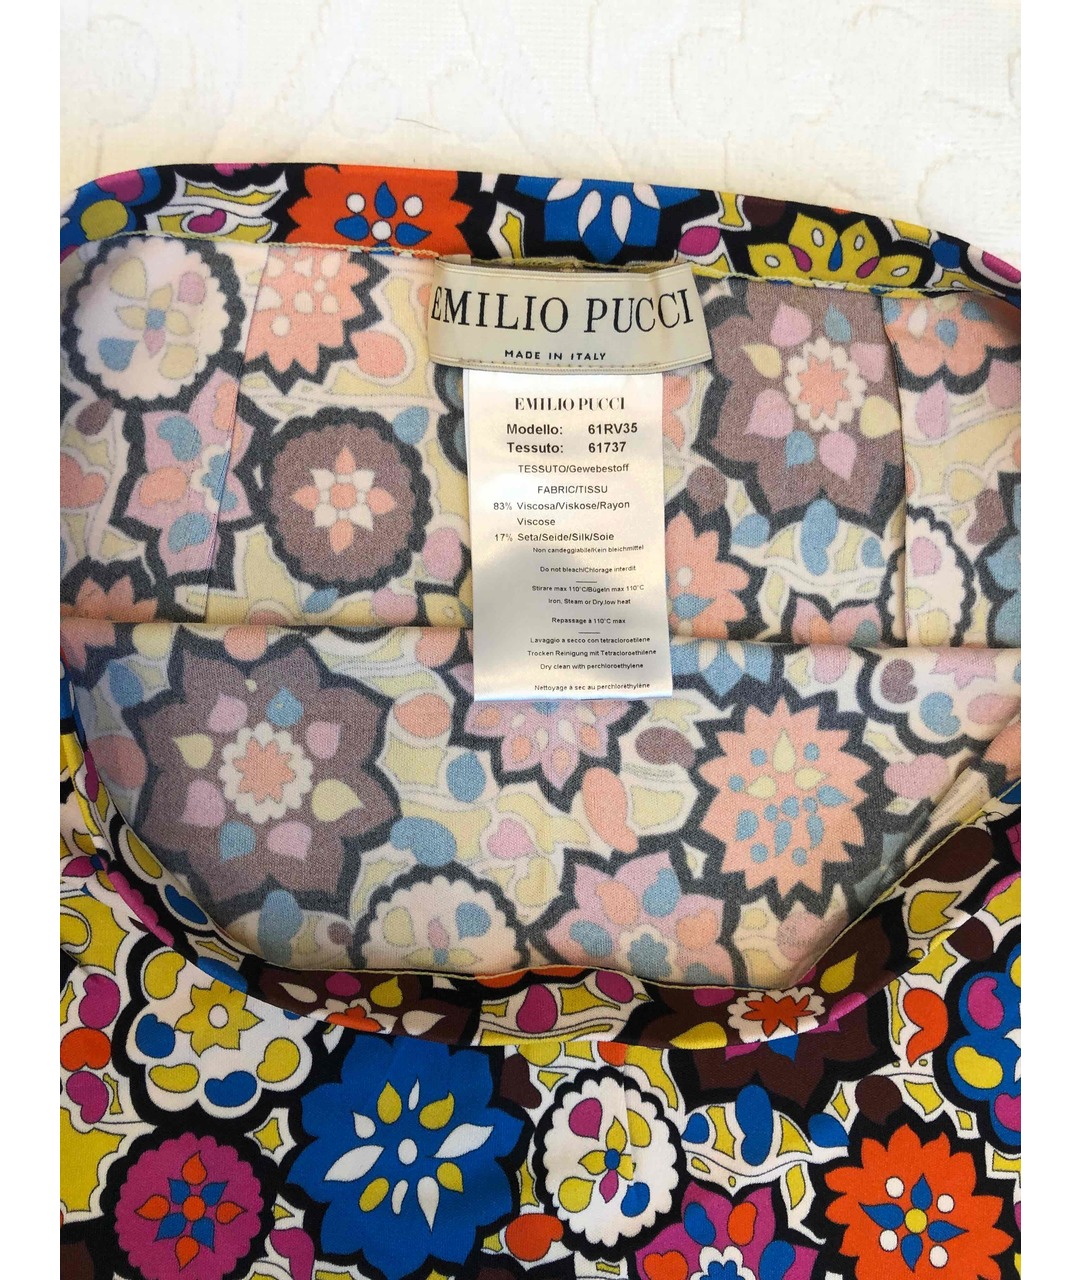 EMILIO PUCCI Мульти вискозная юбка мини, фото 2